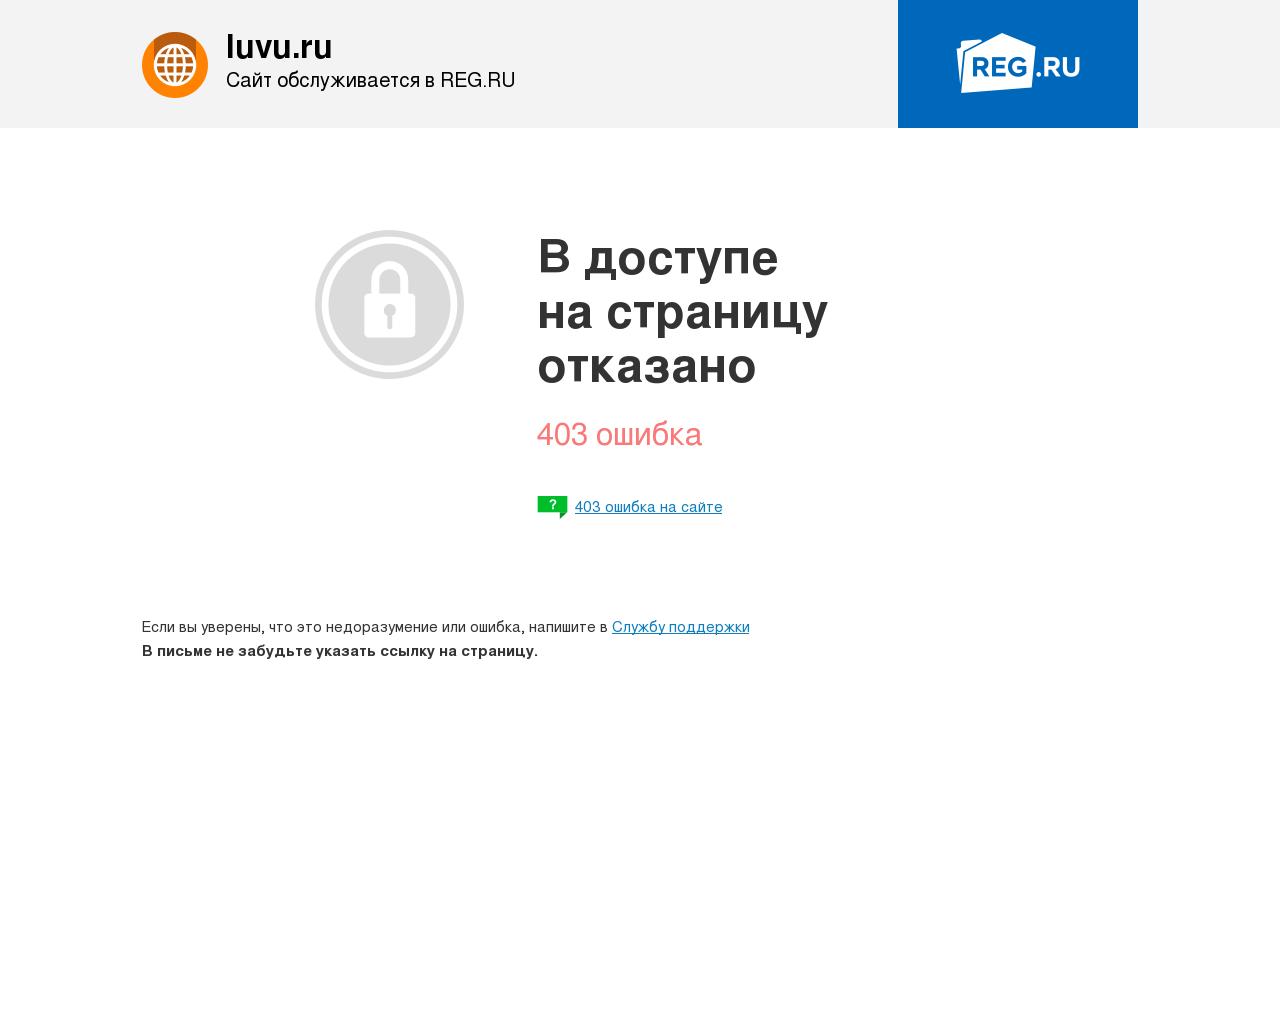 Изображение сайта luvu.ru в разрешении 1280x1024